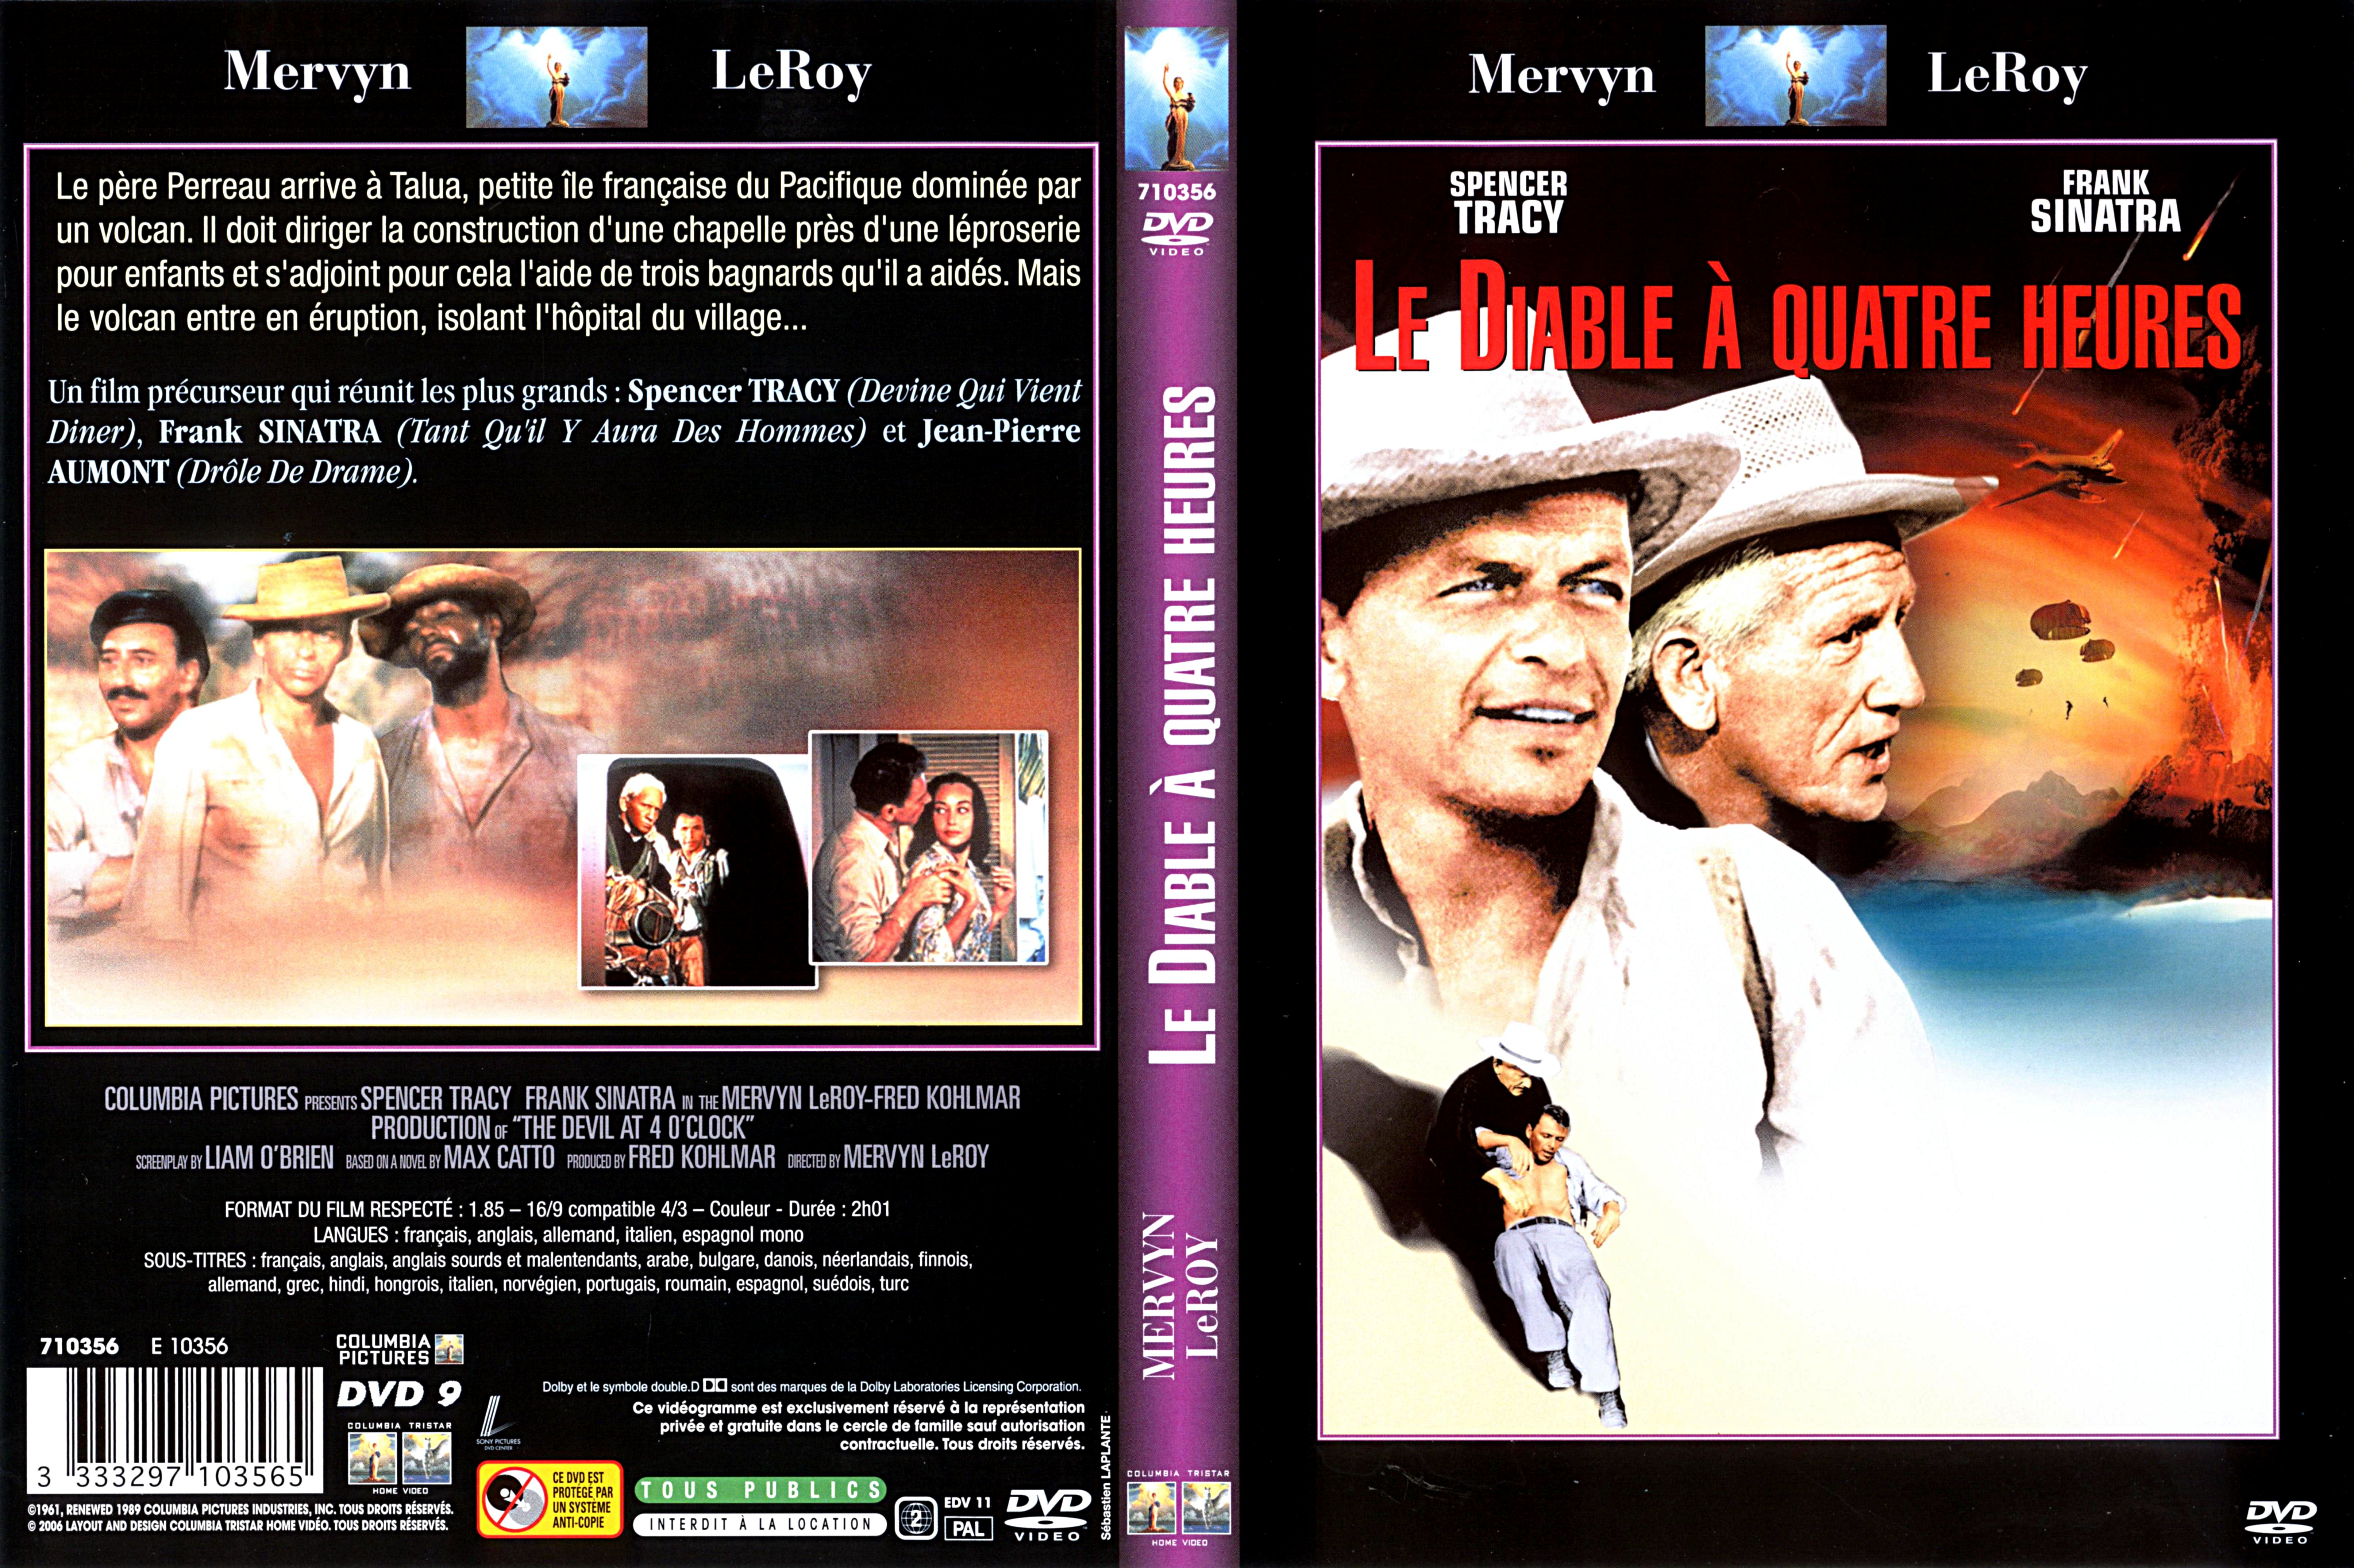 Jaquette DVD Le diable  quatre heures v2